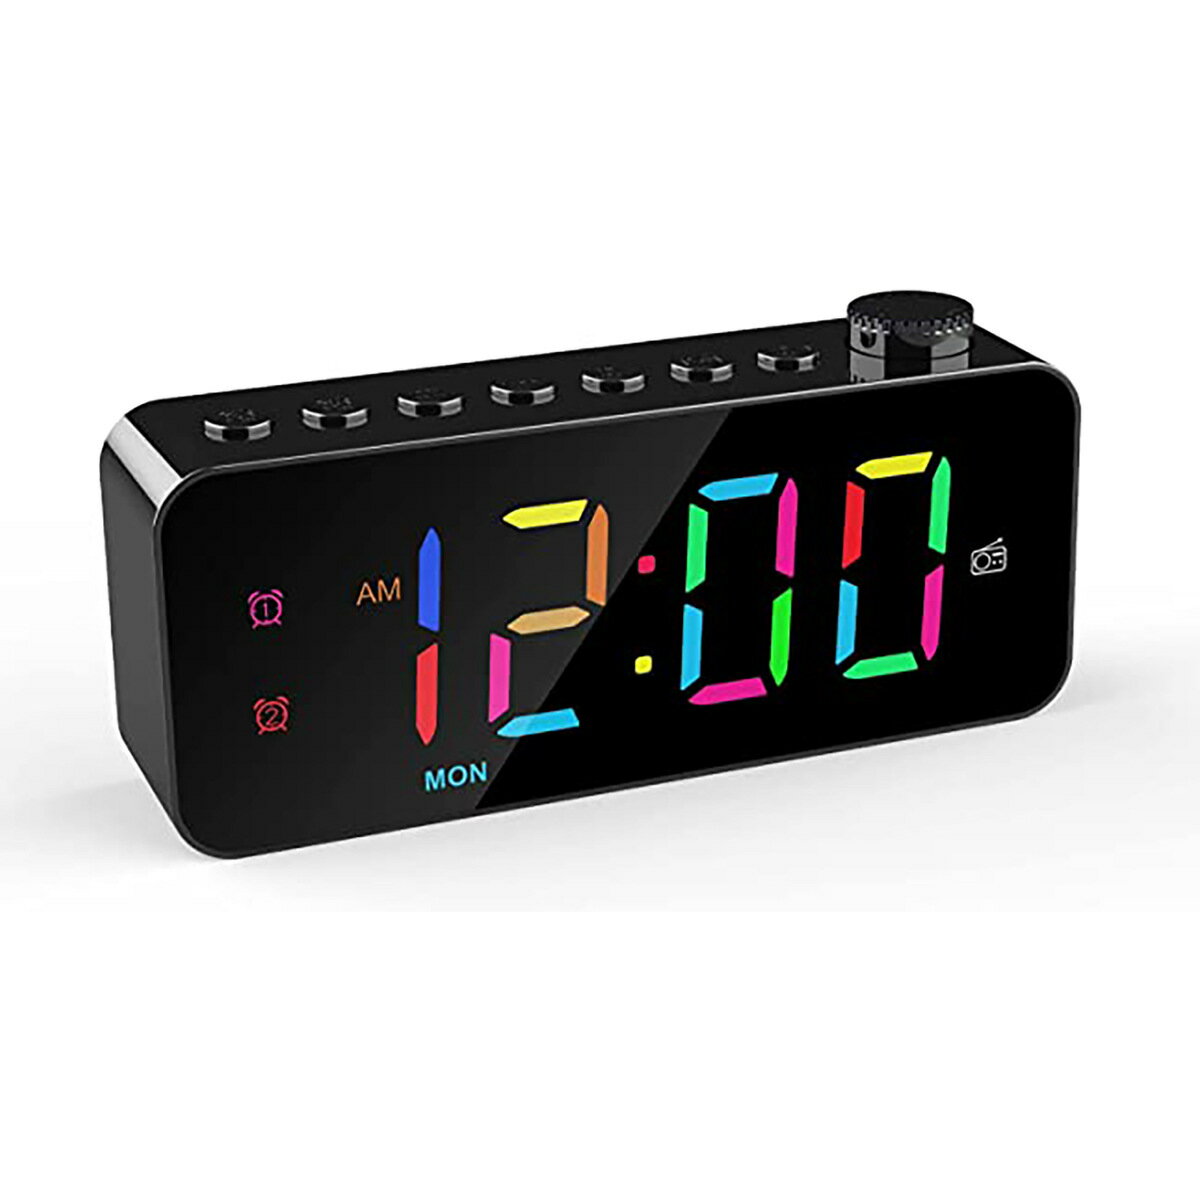 鬧鐘 新款LED數字鬧鐘鏡面七彩時鐘學生專用鬧鐘 USB簡約電子鬧鐘